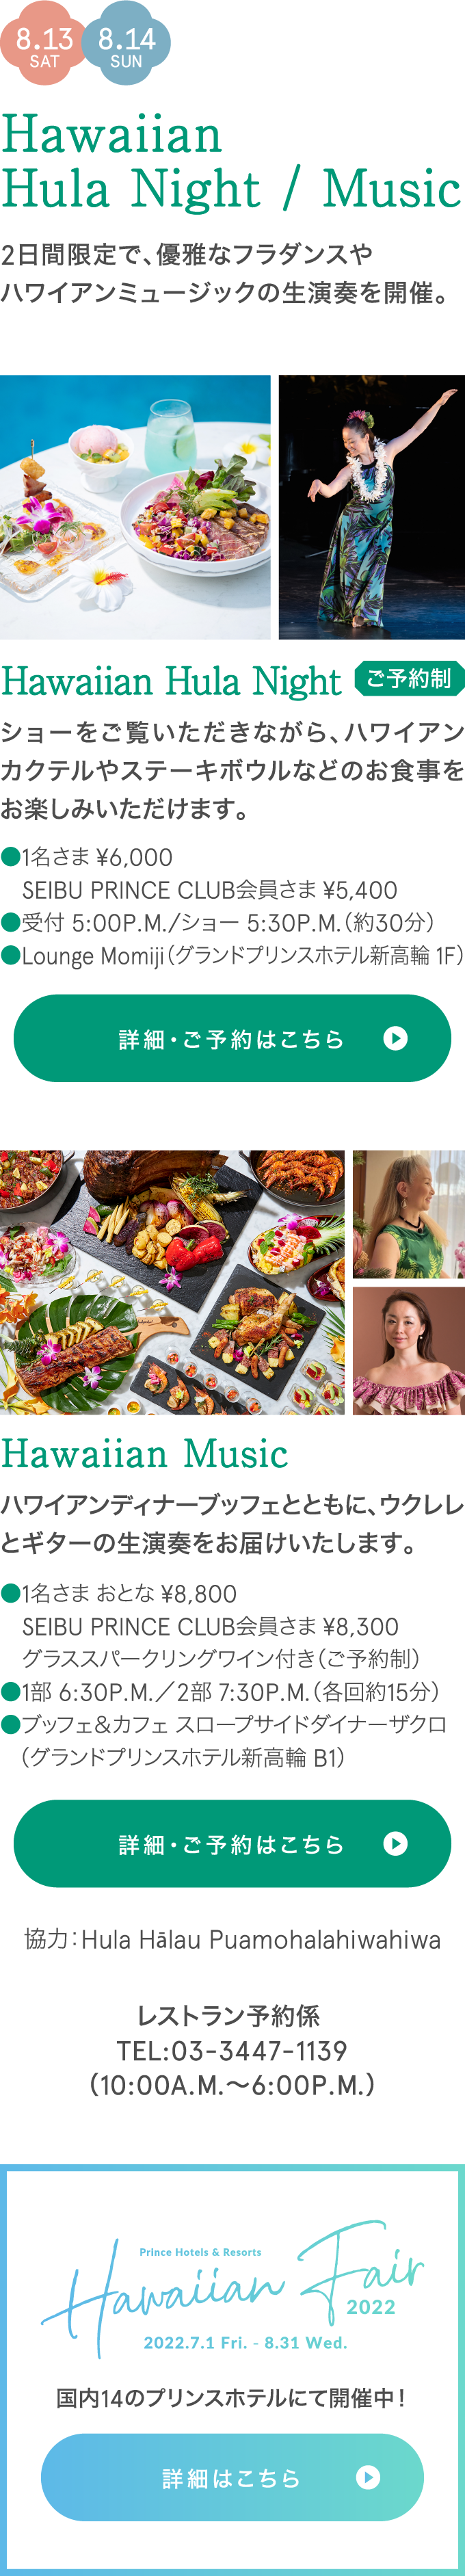 Hawaiian Hula Night/Music